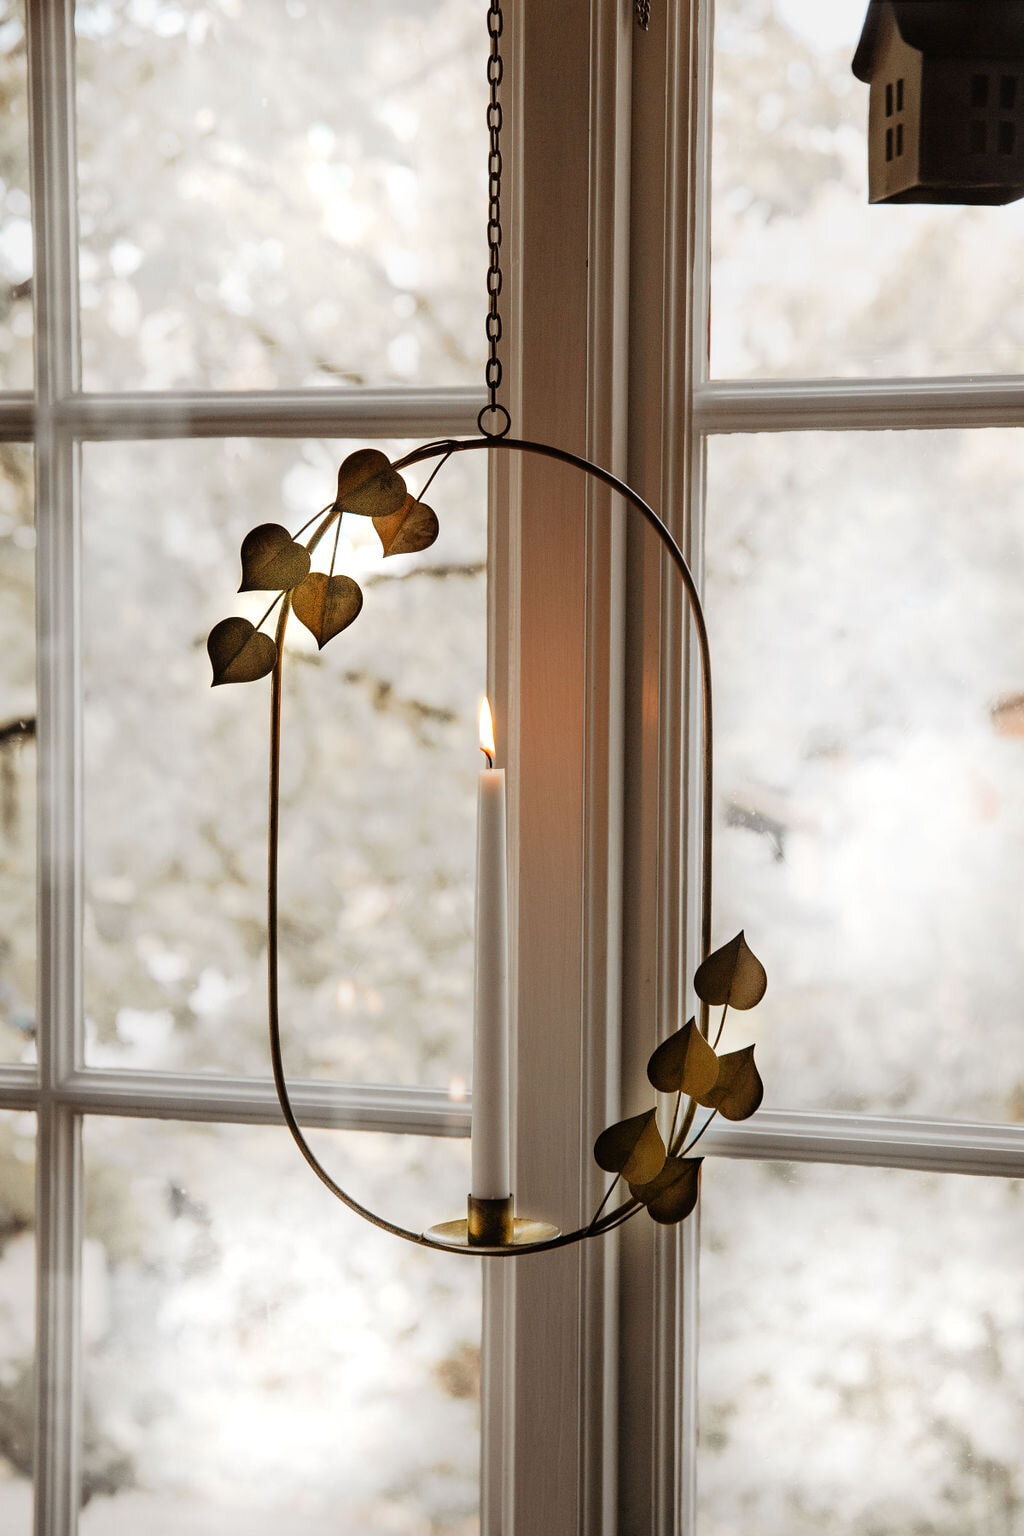 Hanging Candle Holder Leaf Antique Brass